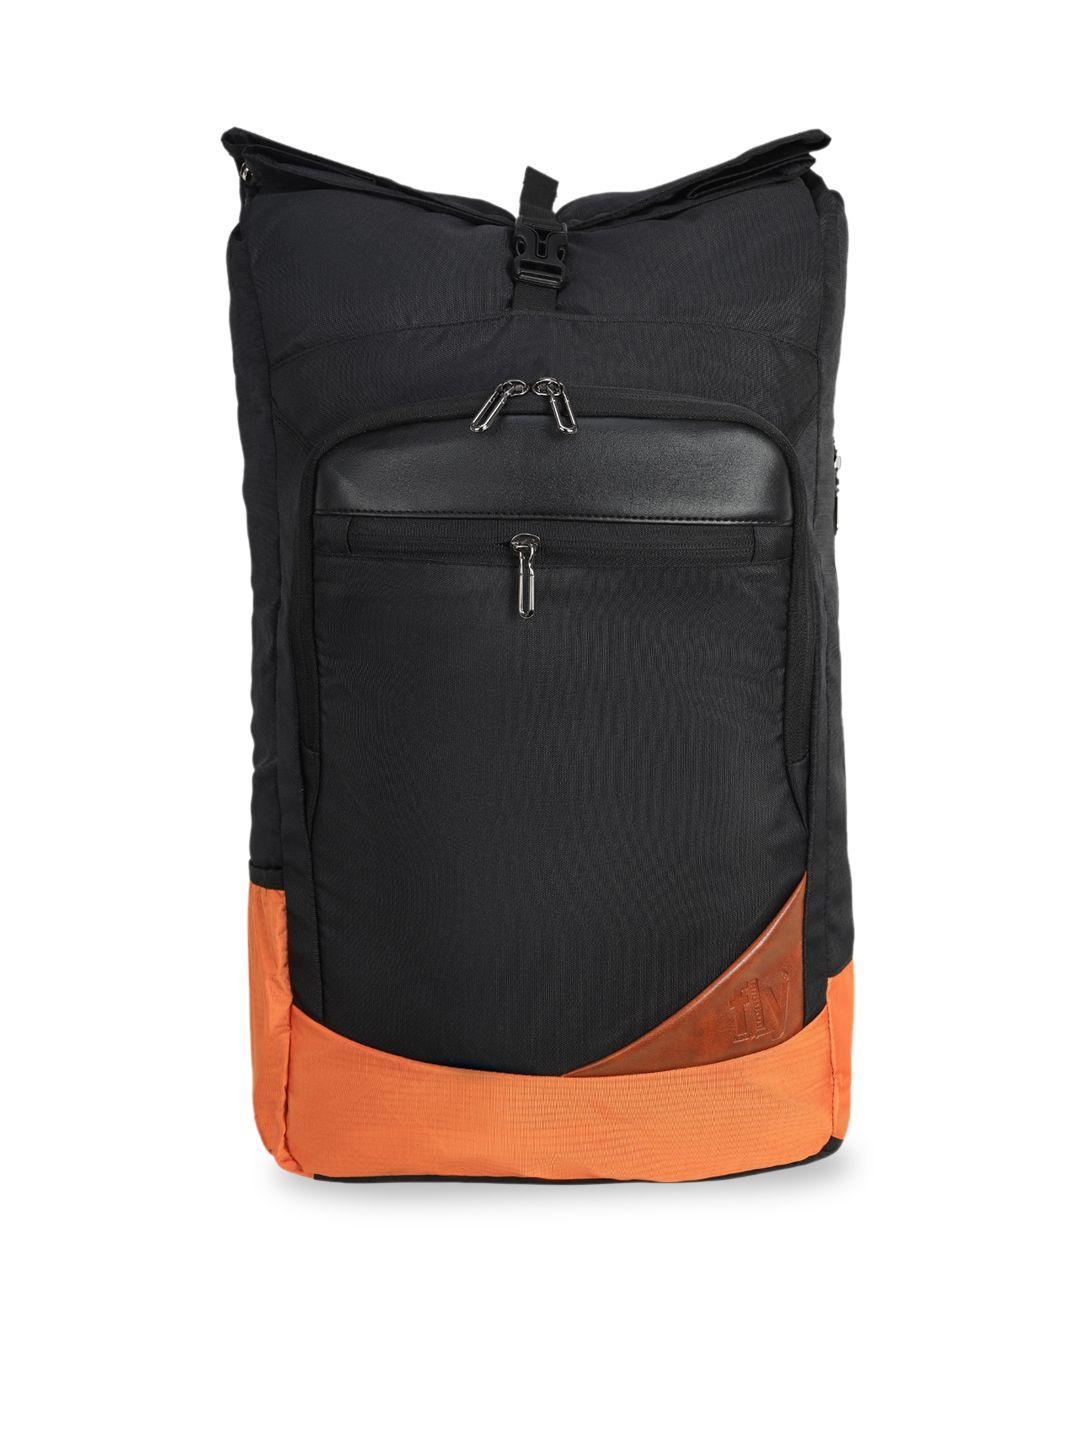 fly fashion unisex black & orange colourblocked backpack